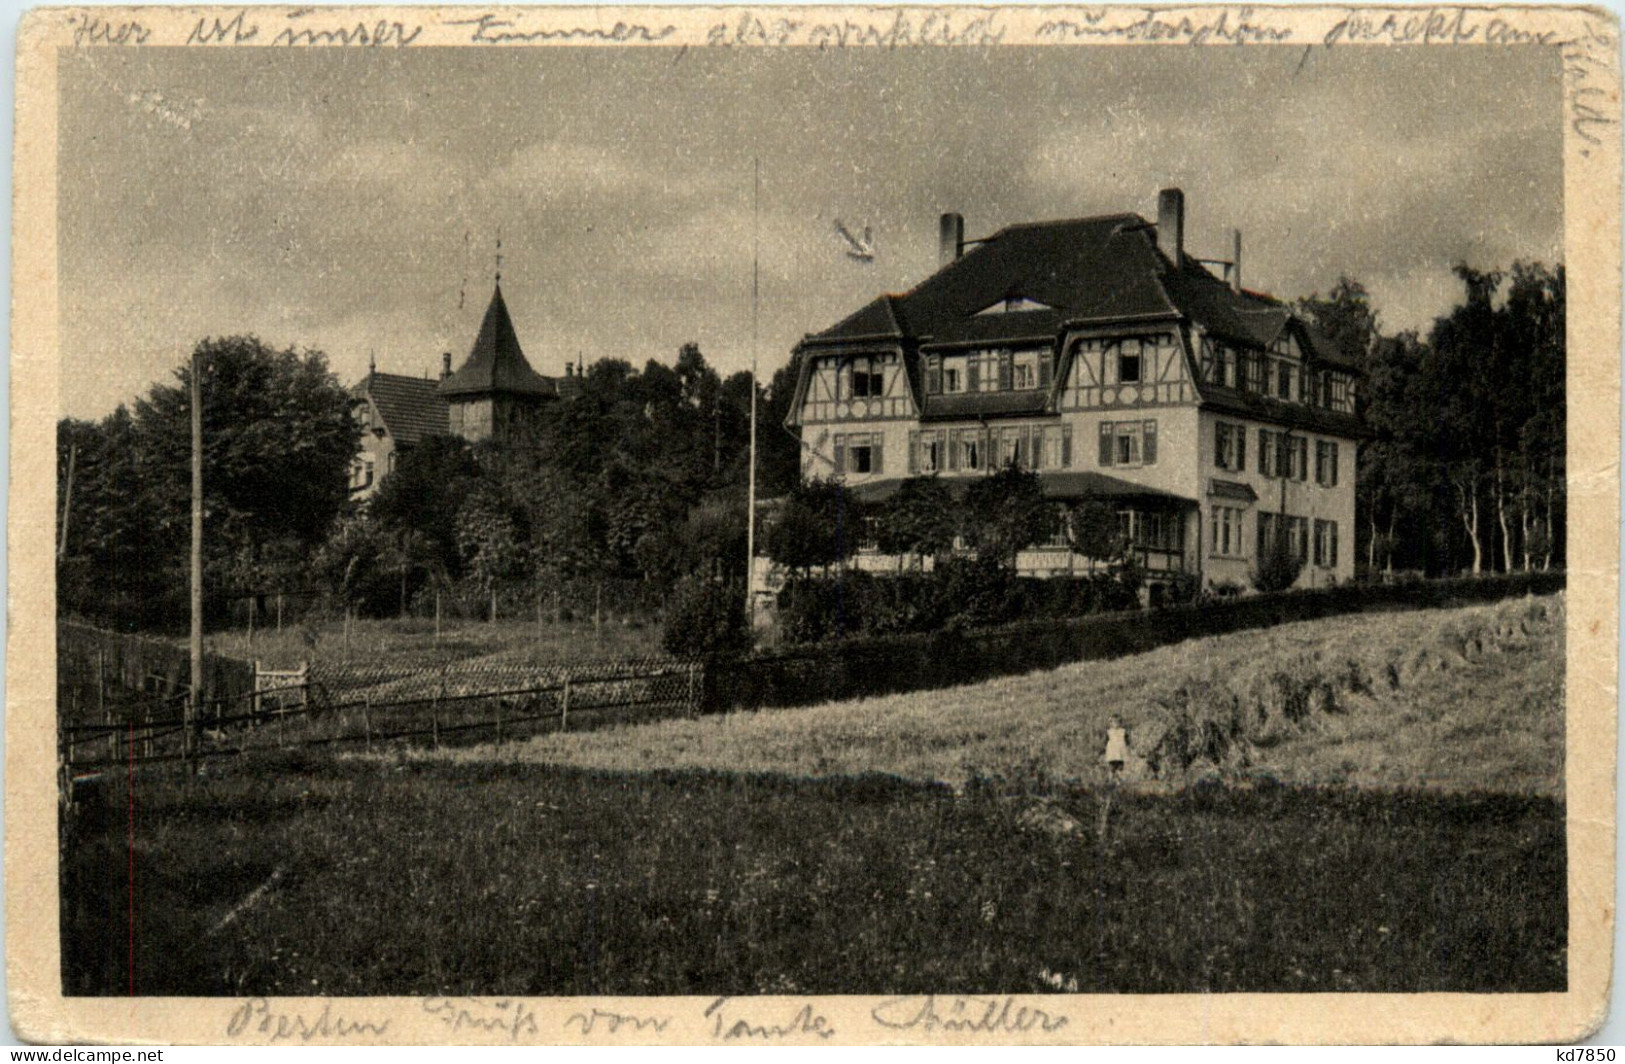 Bad Klosterlausnitz, Waldhaus Zur Köppe - Bad Klosterlausnitz